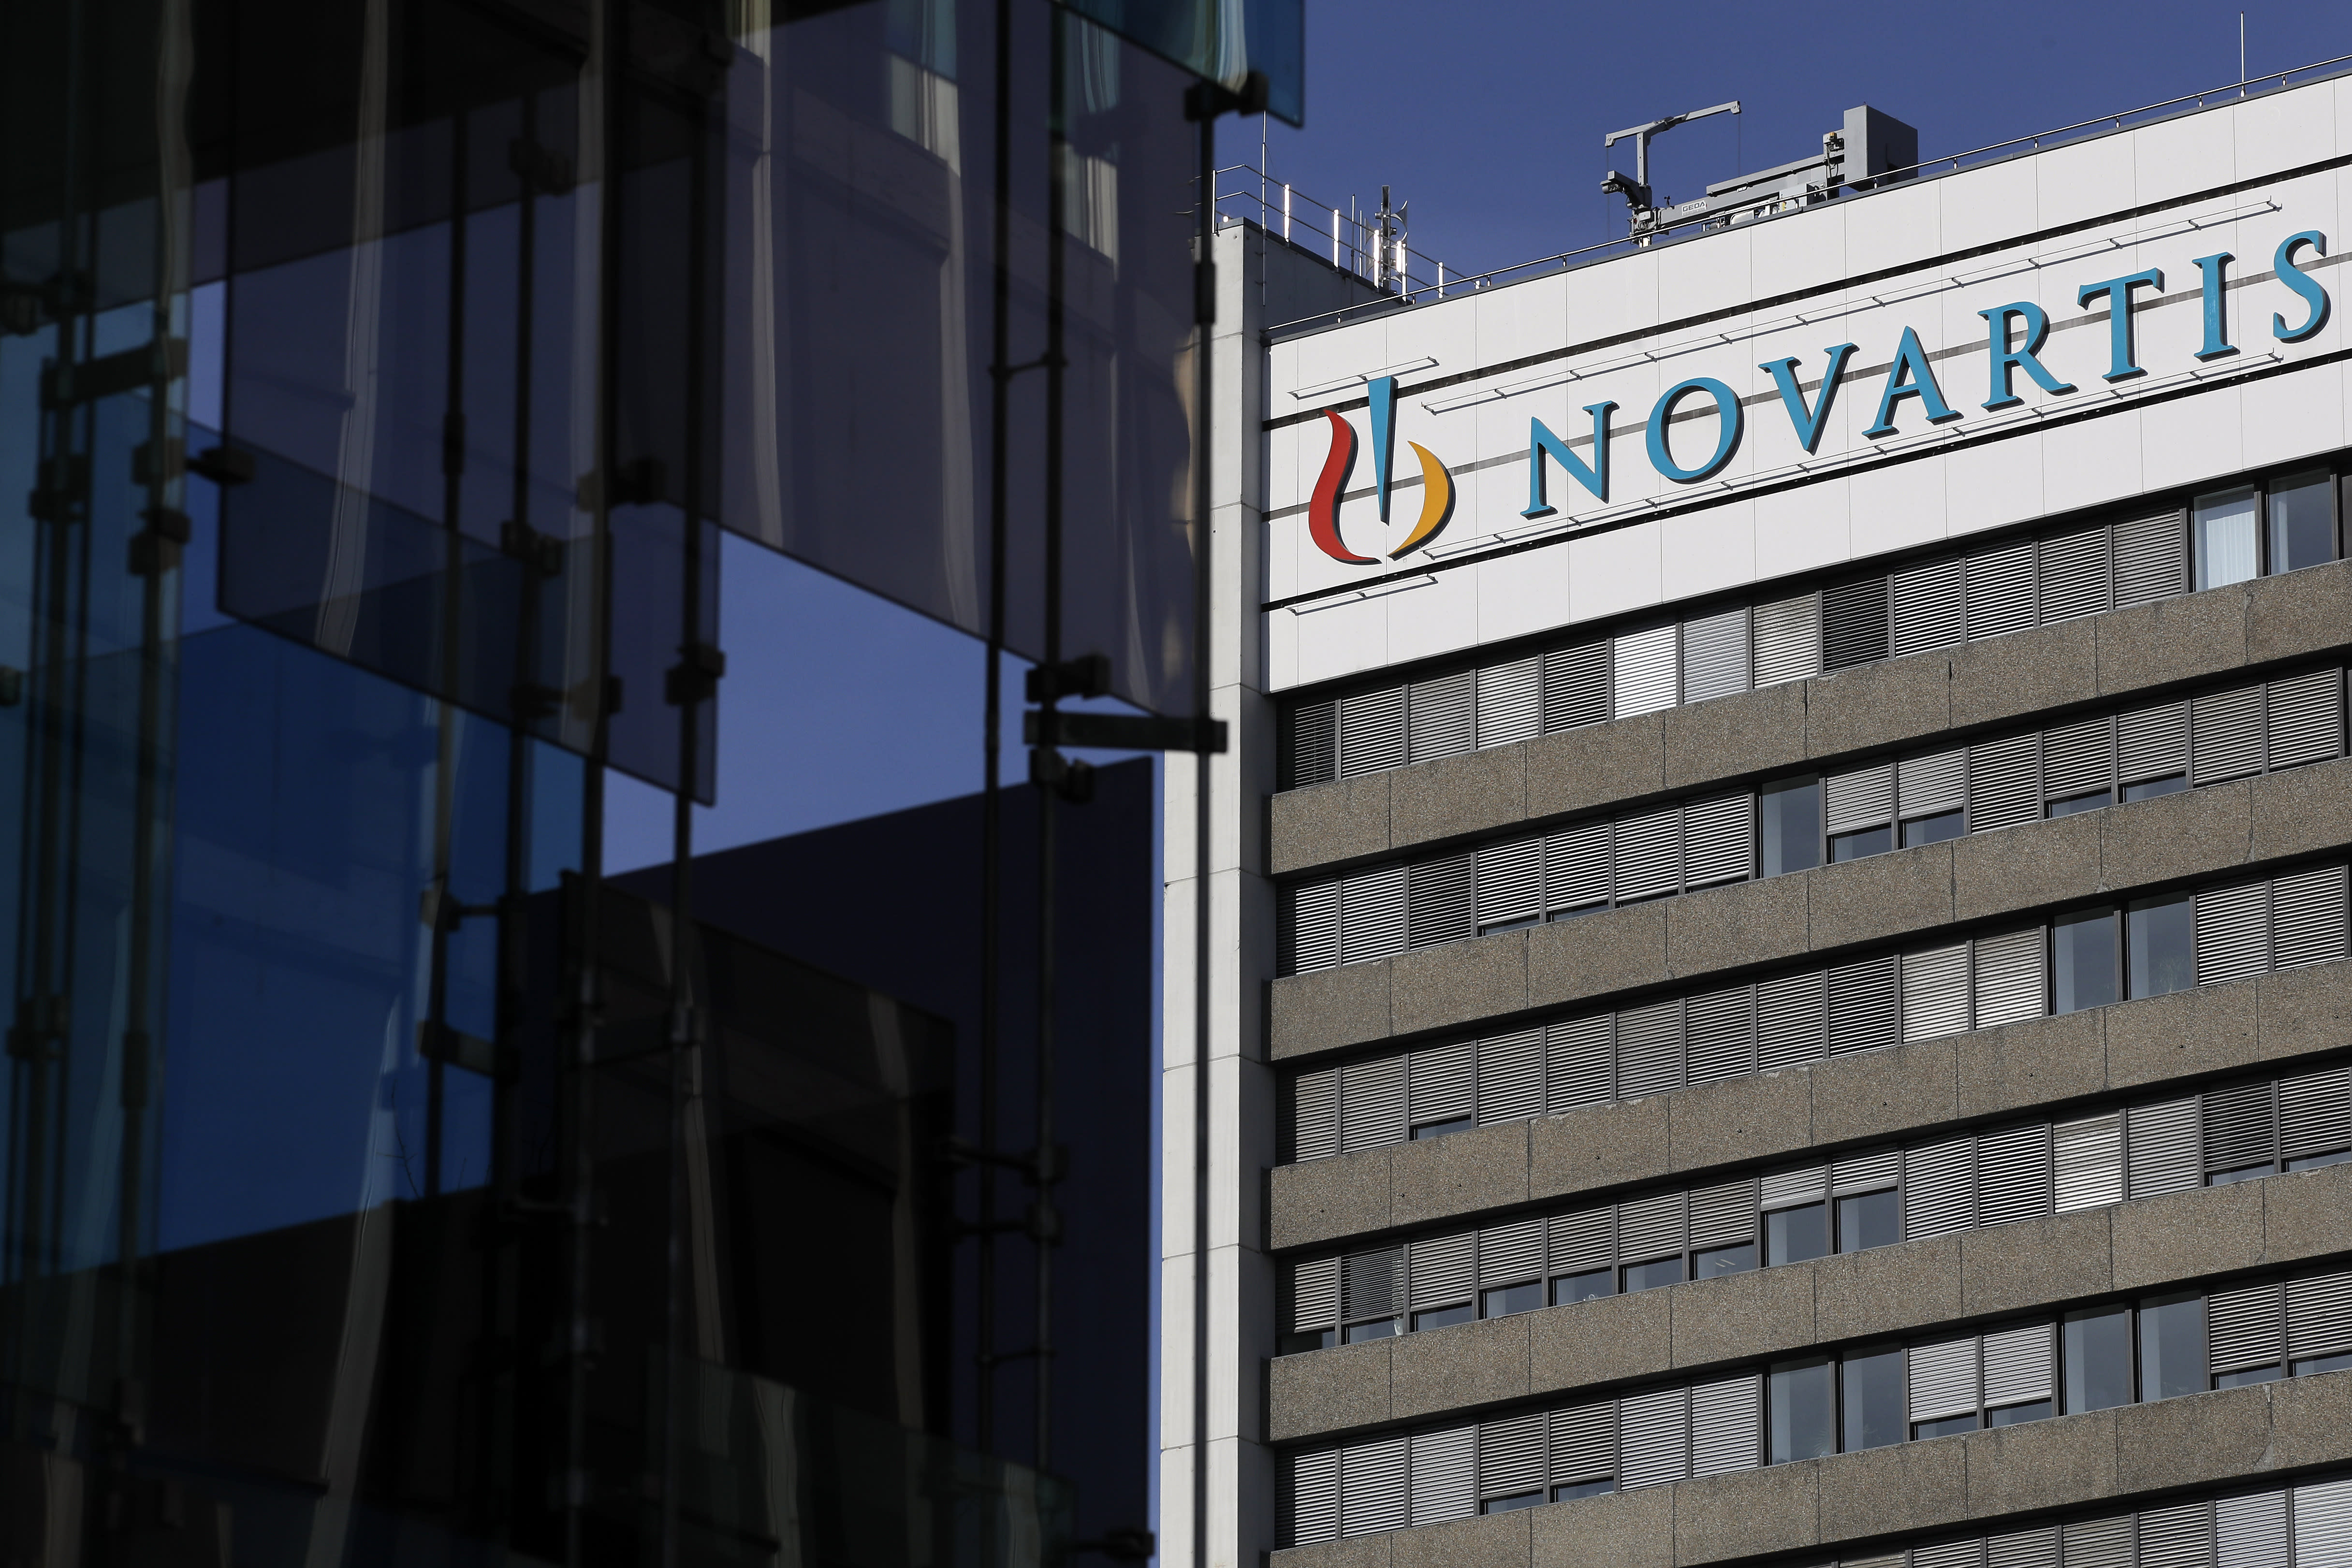 De Sandoz-eenheid van Novartis begint te handelen tegen 24 Zwitserse frank na voltooiing van de verkoop